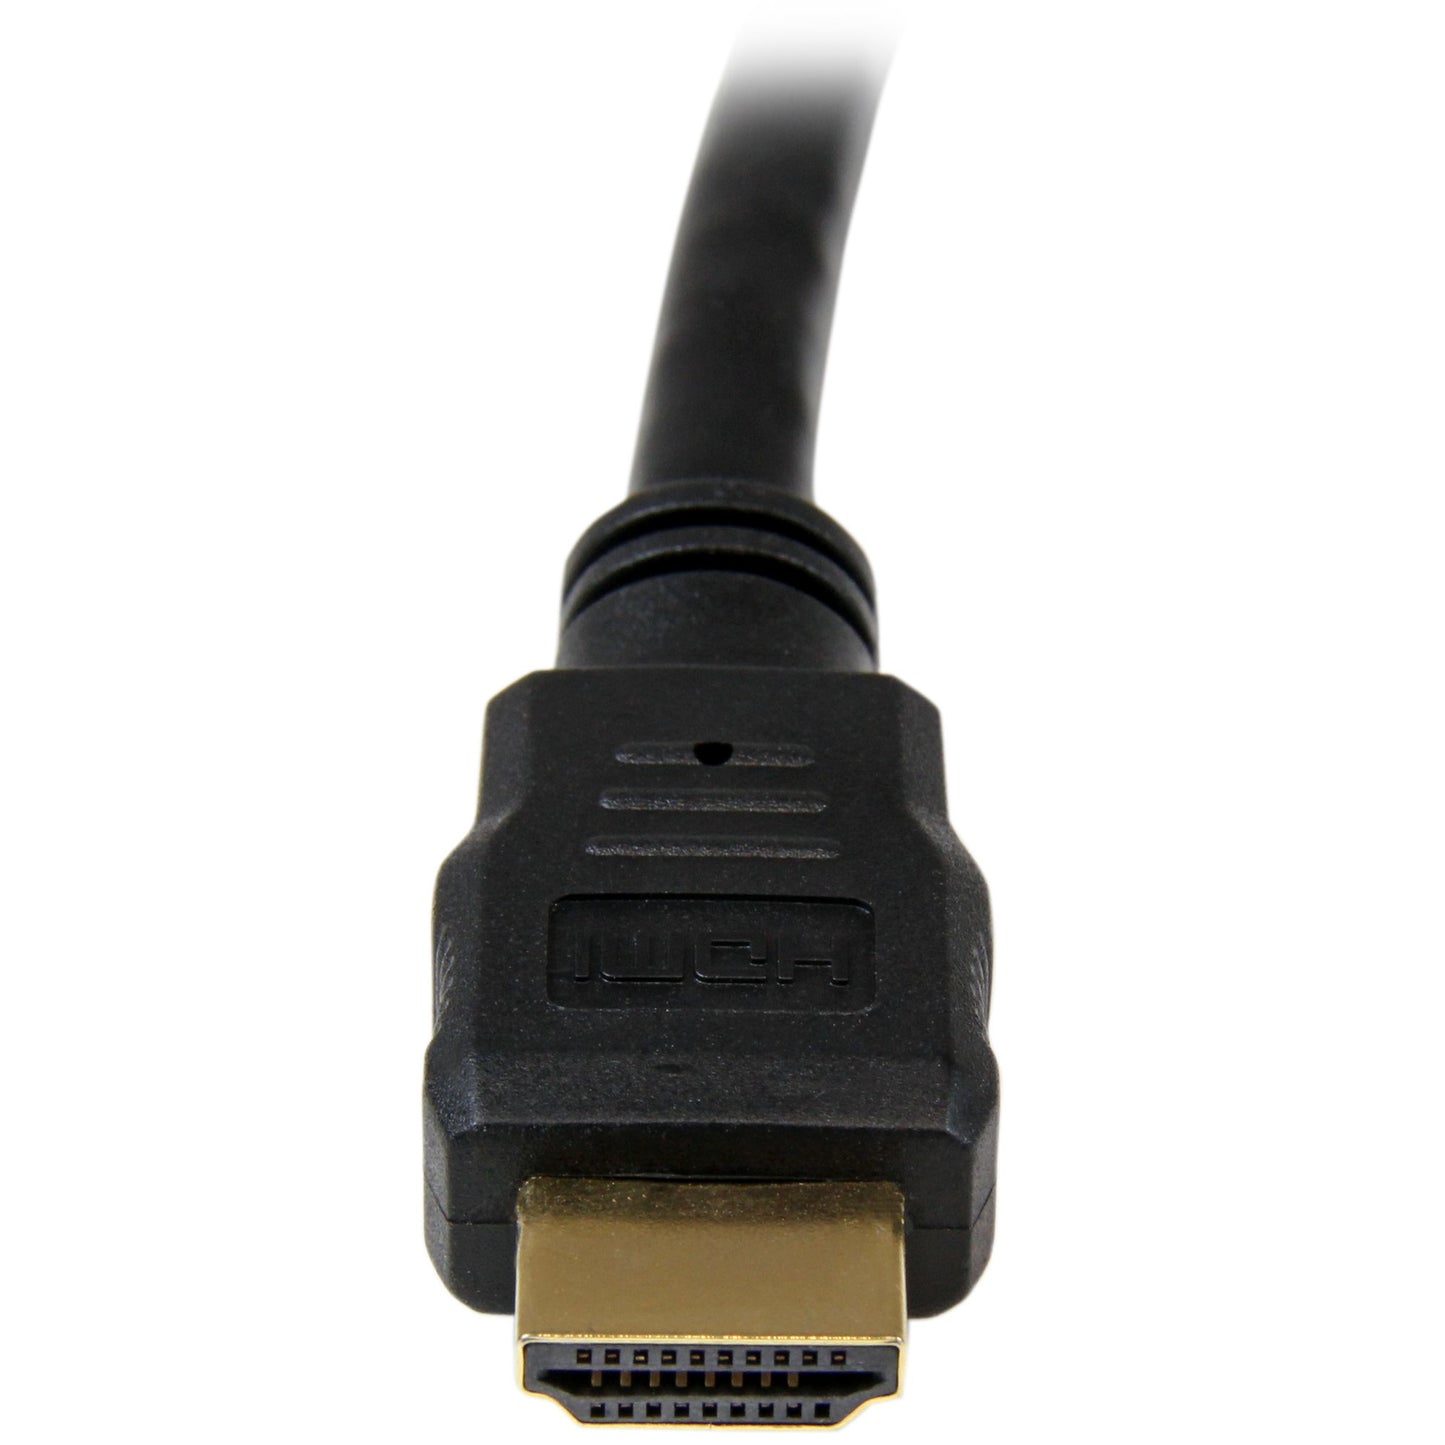 Cable HDMI STARTECH de alta velocidad 1.8m - 2x HDMI Macho - Negro - Ultra HD 4k x 2k - Extremo Secundario: 1 x 19-pin HDMI Digital Audio/Video - Male - Admite hasta3840 x 2160